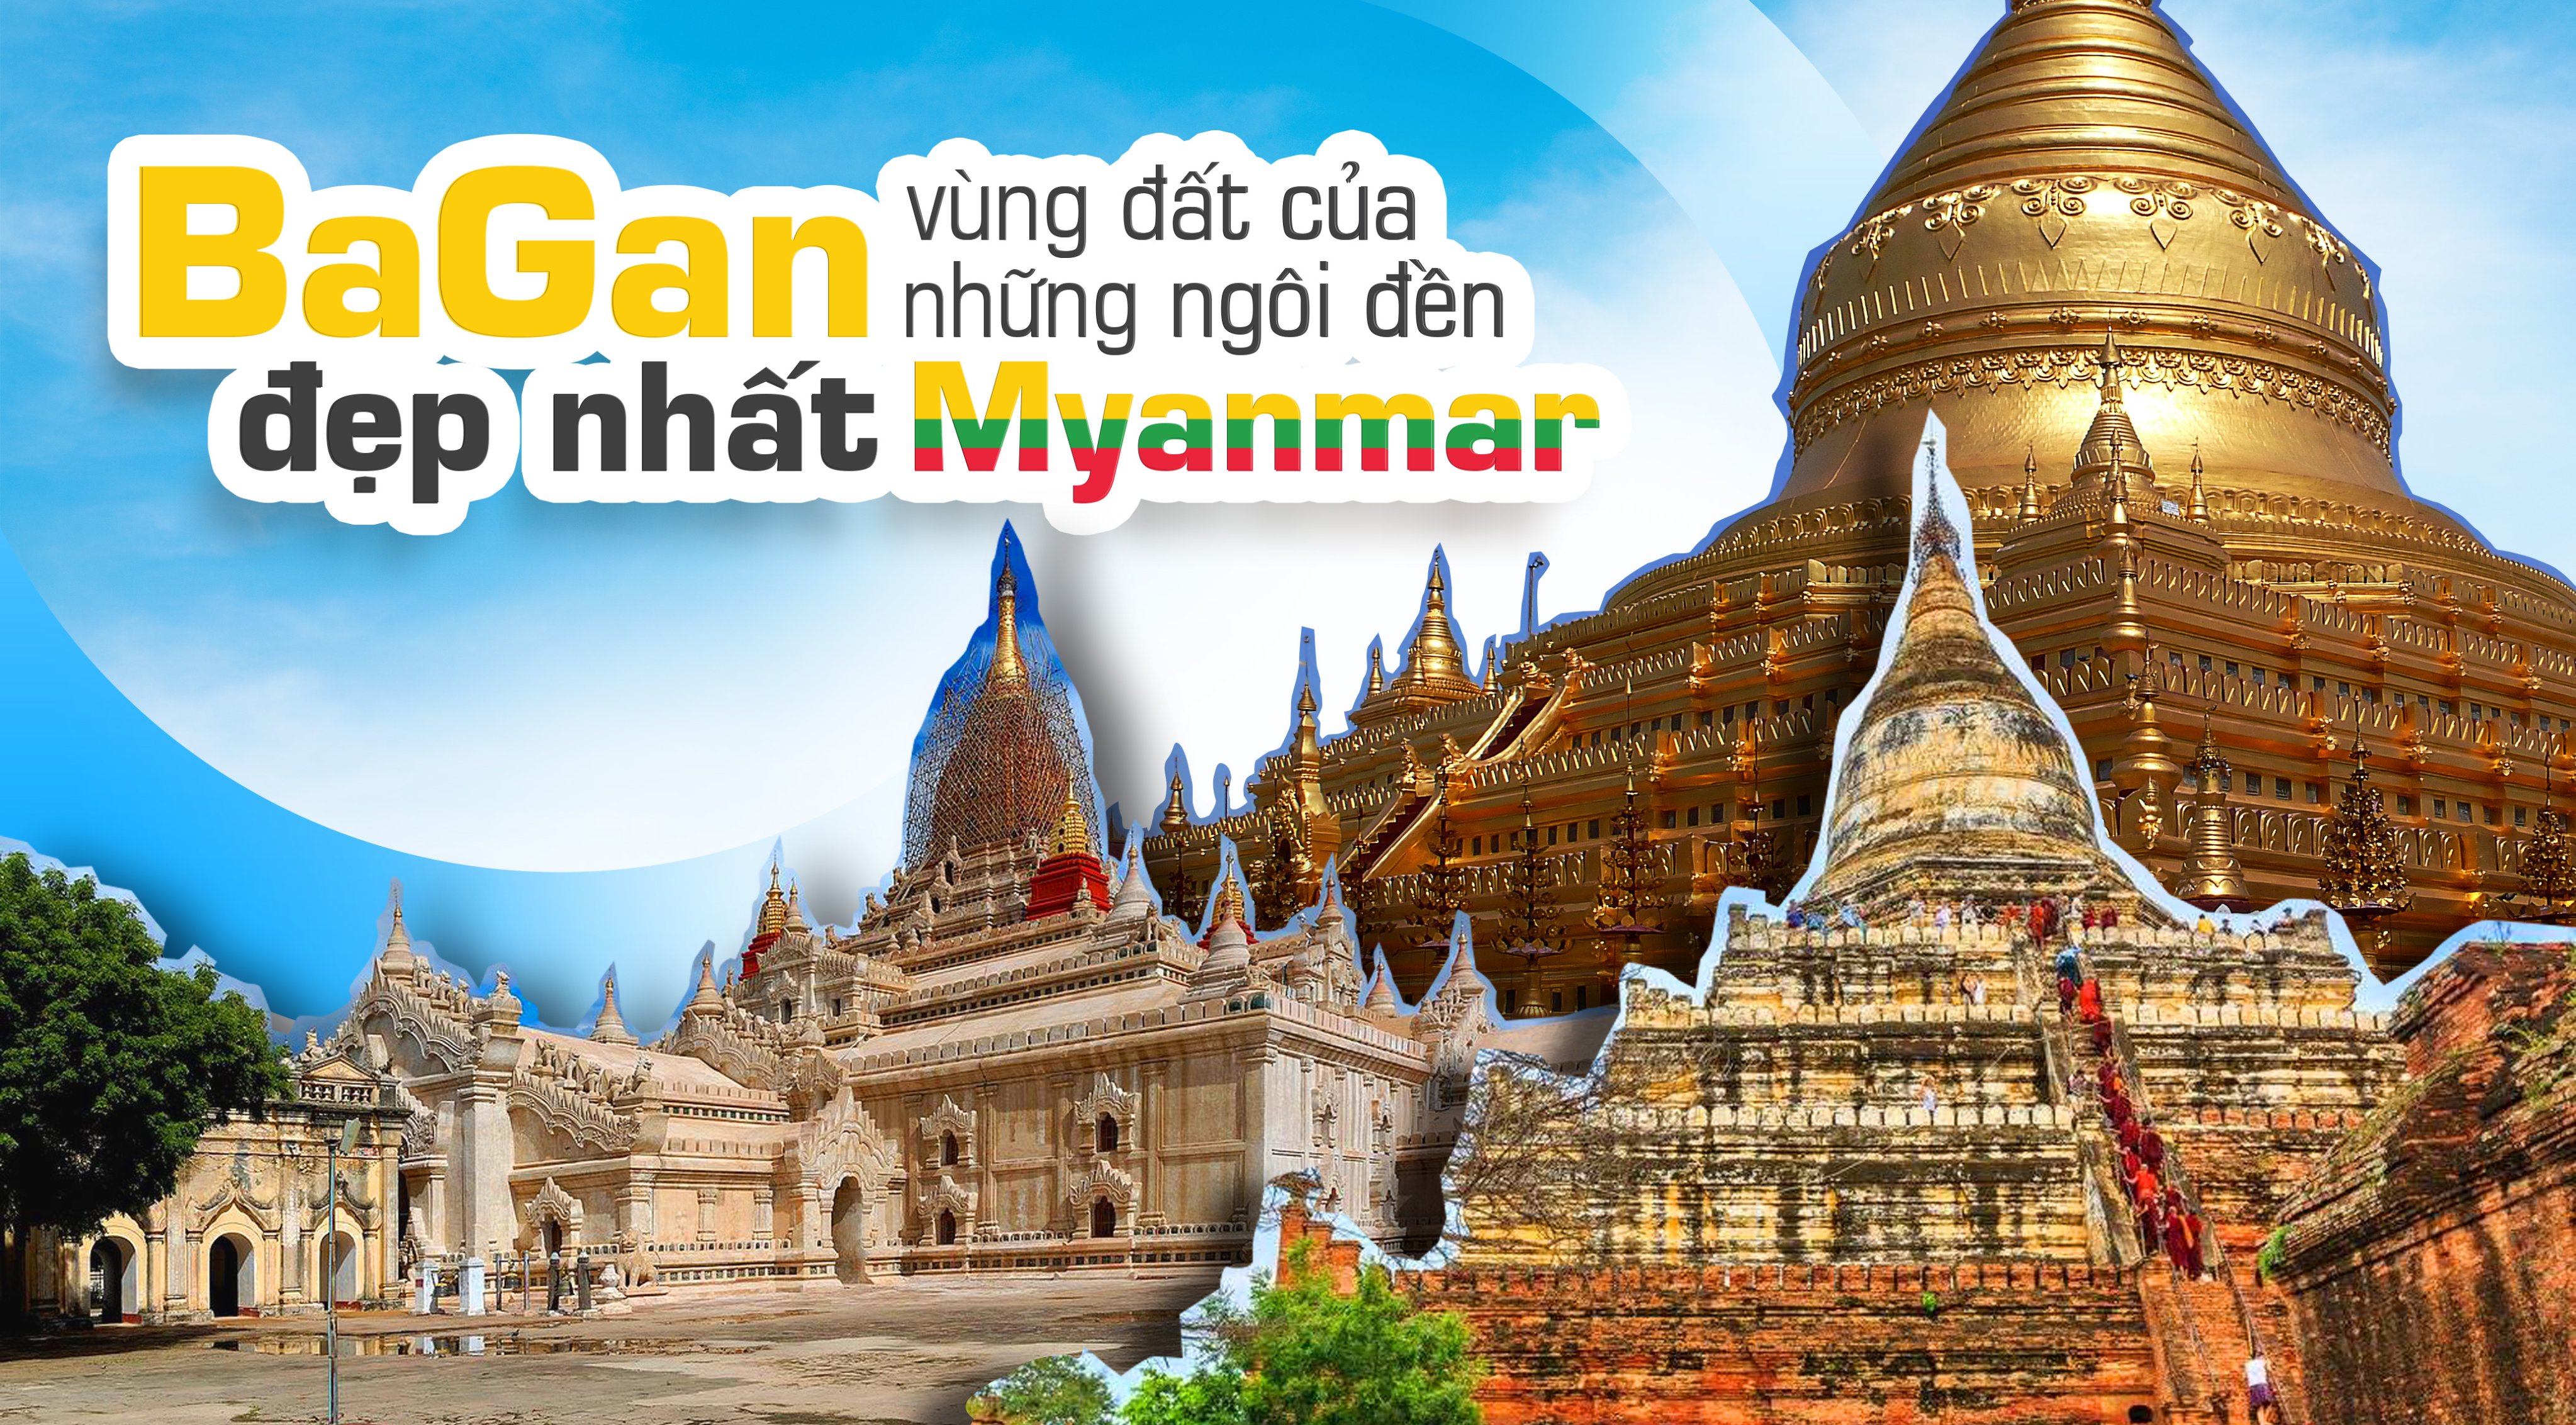 Bagan: Bạn đã bao giờ thử tưởng tượng mình đang đứng giữa những cánh đồng lúa chín và hàng trăm ngôi chùa cổ kính ở Bagan chưa? Hãy xem hình ảnh để trải nghiệm trực tiếp thiên nhiên tuyệt đẹp và lịch sử phong phú của vùng đất Myanmar này.